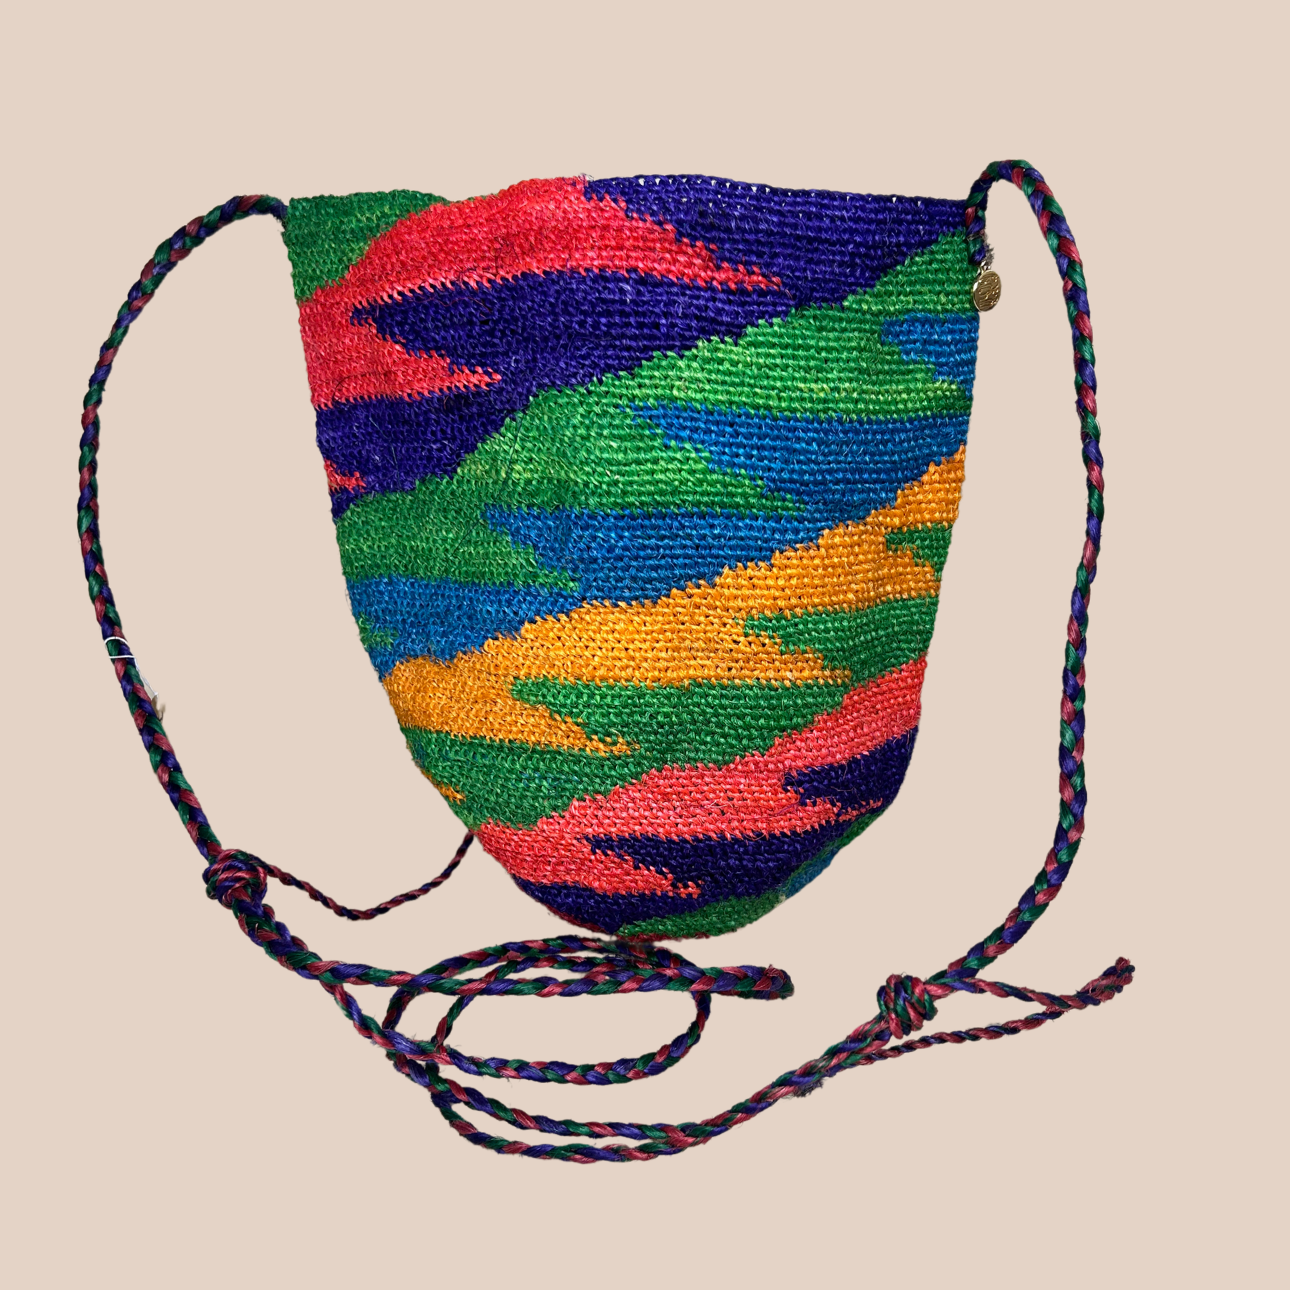 Image du sac Dolores de chez maison badigo, sac en fibres naturelle de cactus multicolore